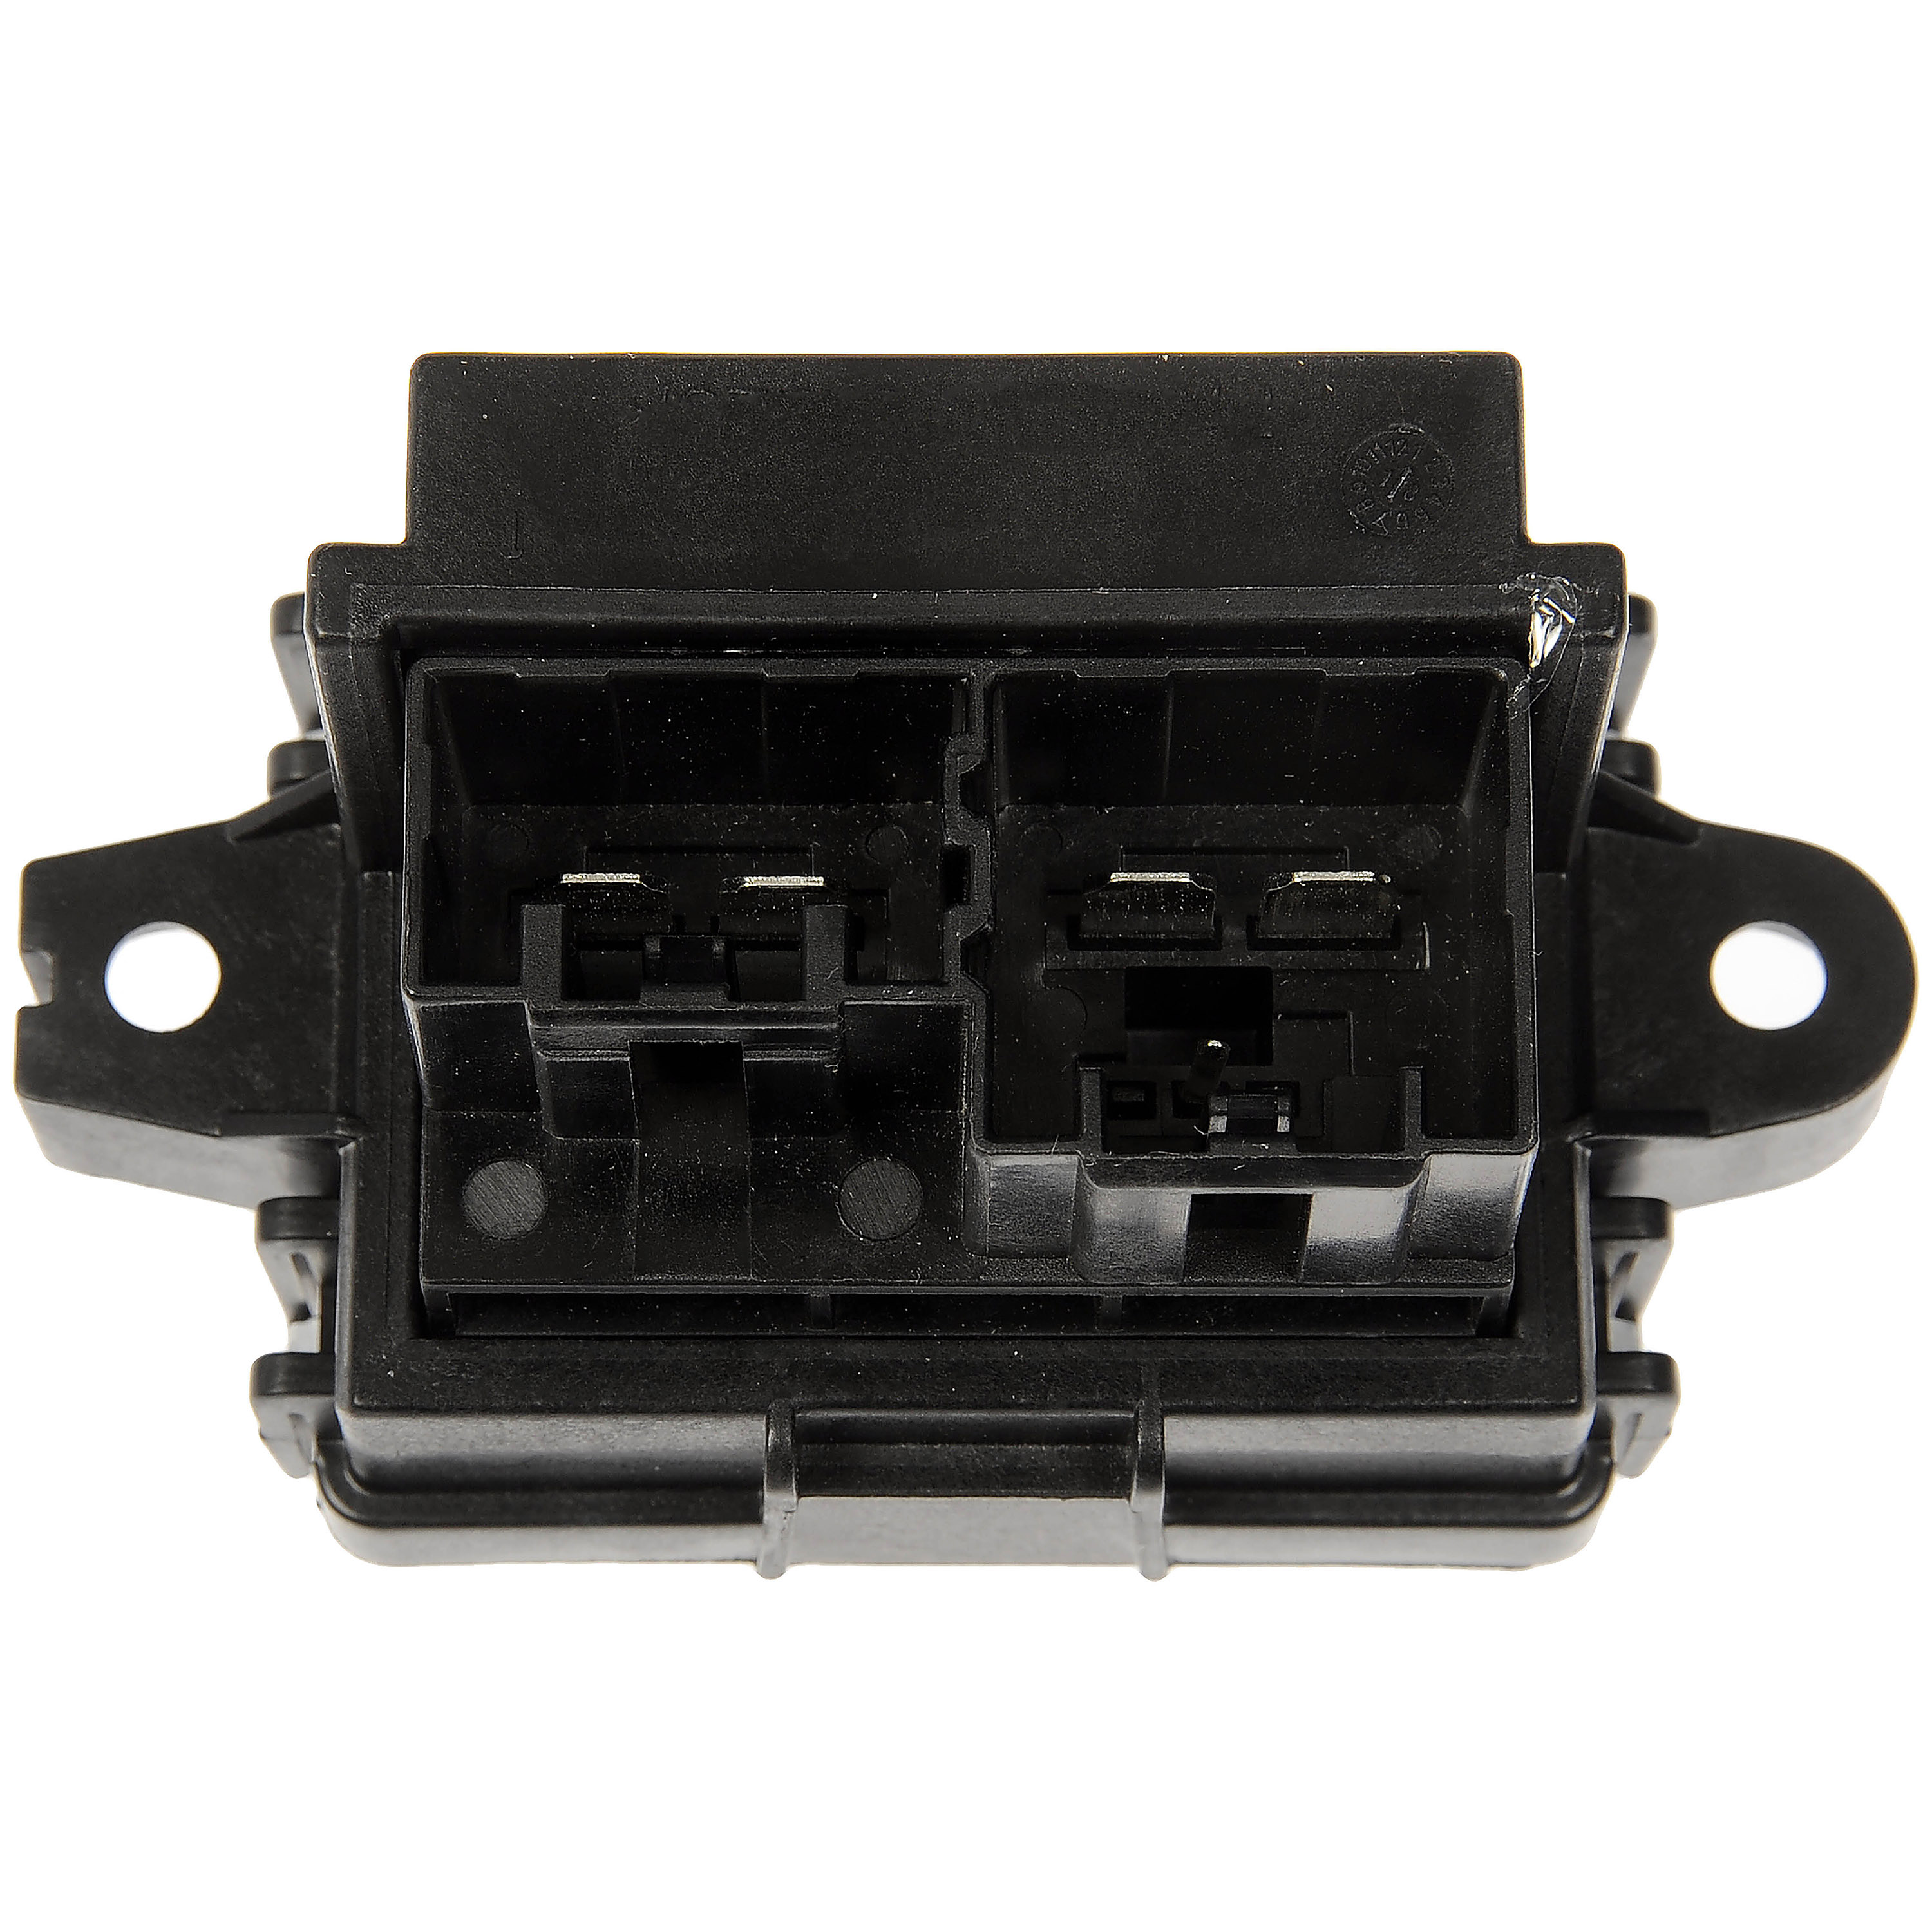 Dorman 973-069 Rear Blower Motor Resistor Kit for Select Chevrolet GMC Models　並行輸入品 - 5